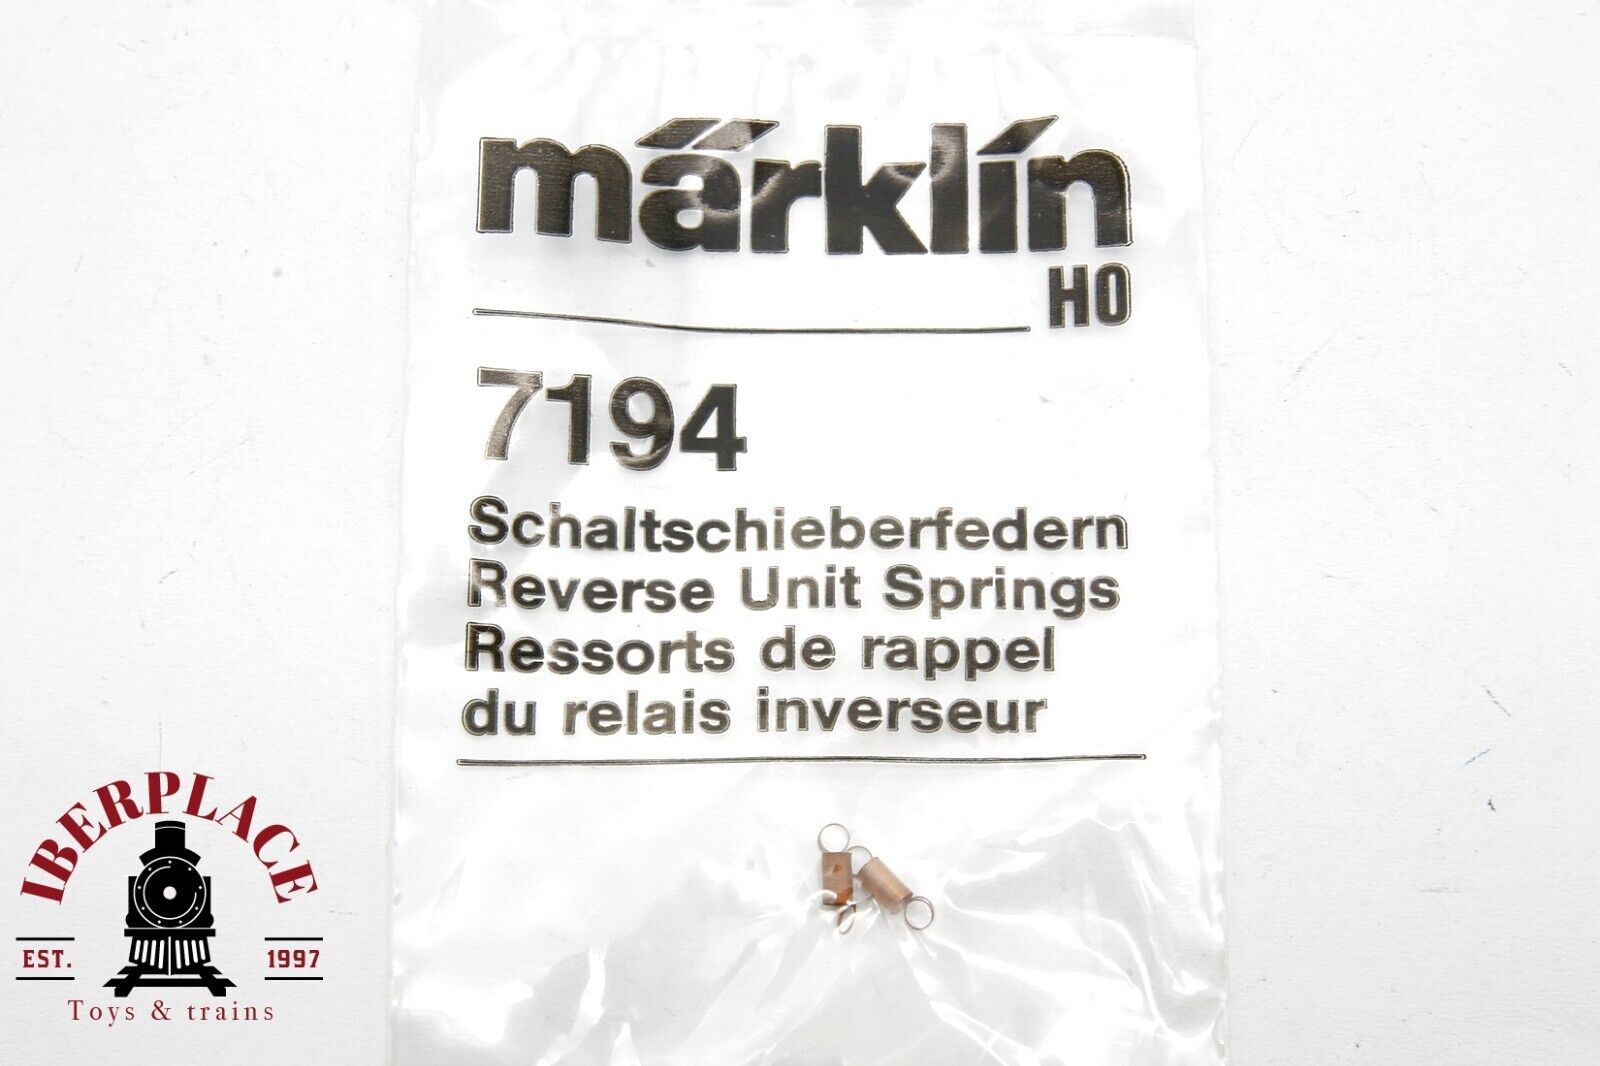 Märklin 7194 Resortes para conmutadores de corredera H0 escala 1:87 ho 00